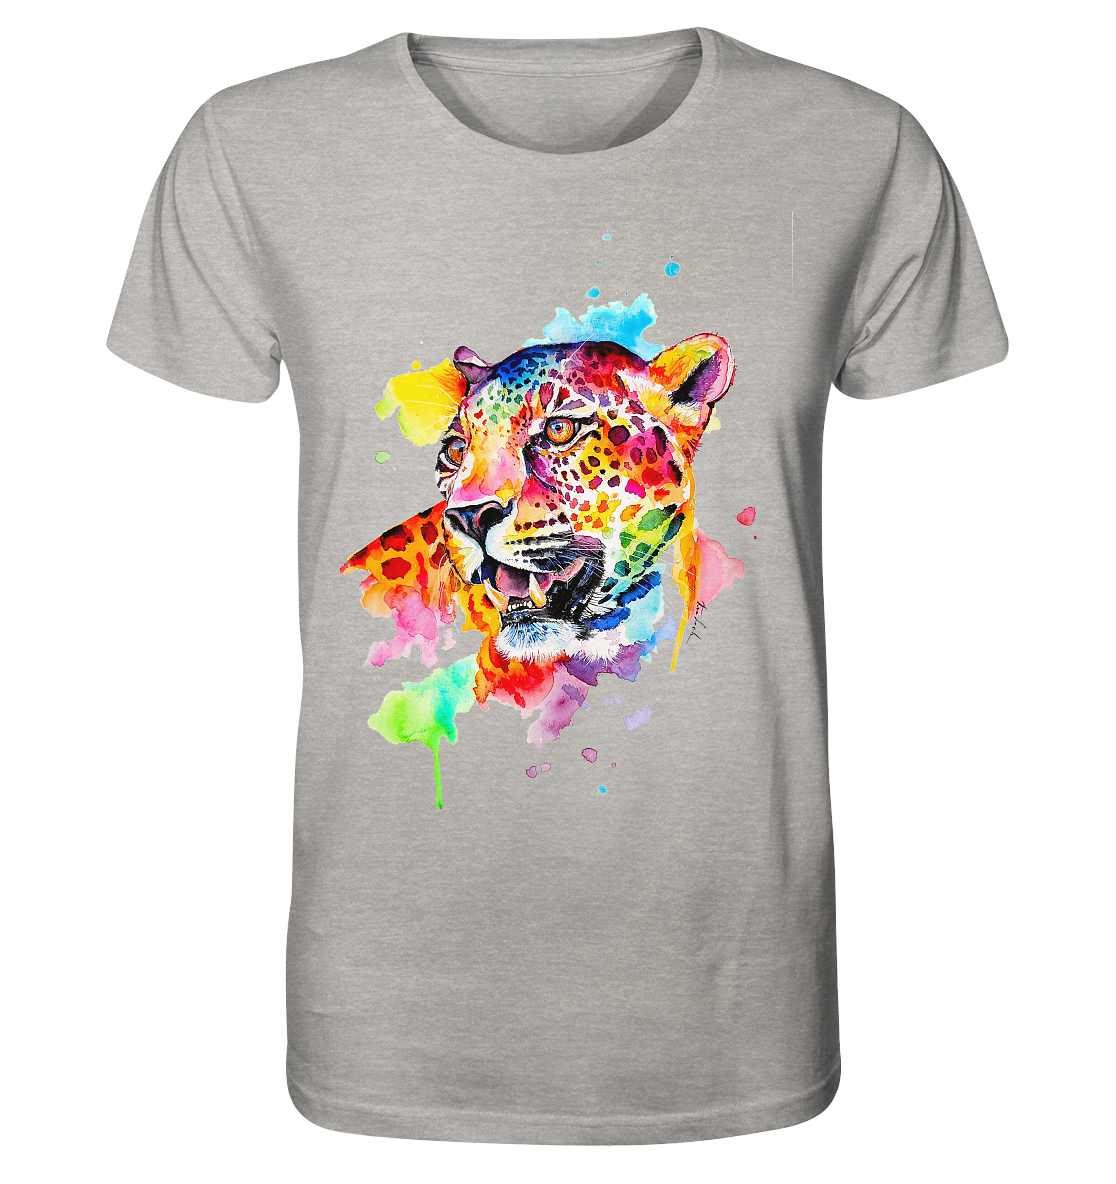 Bunter Leopard  - Organic Shirt (meliert)